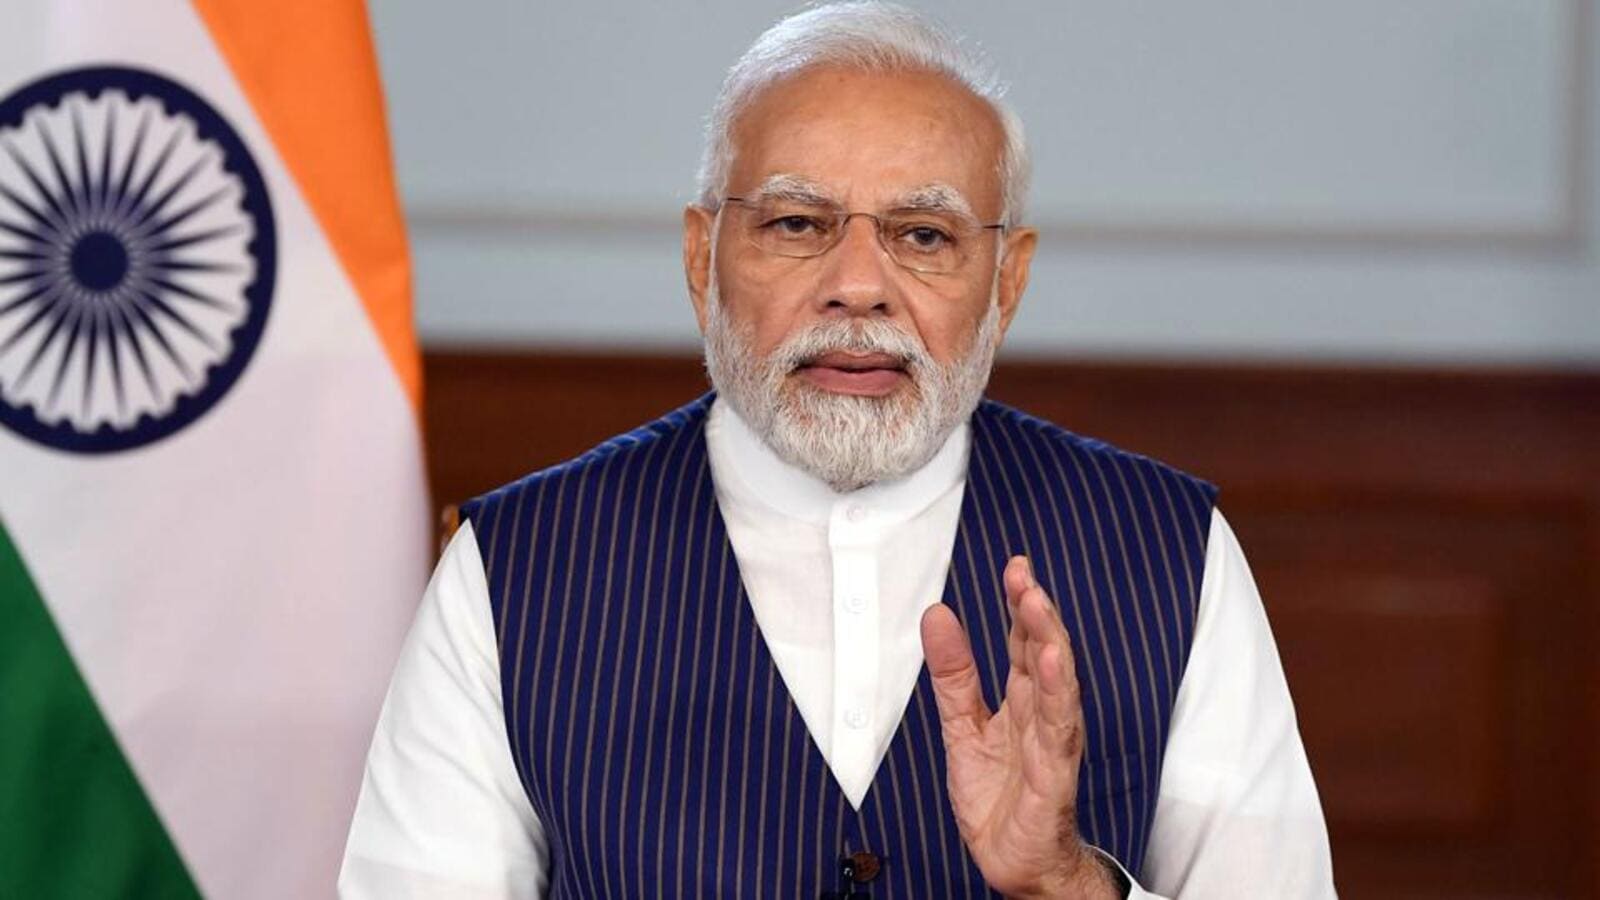 PM Modi discutirá energía, clima, seguridad alimentaria con líderes mundiales en la cumbre del G7 |  Últimas noticias India